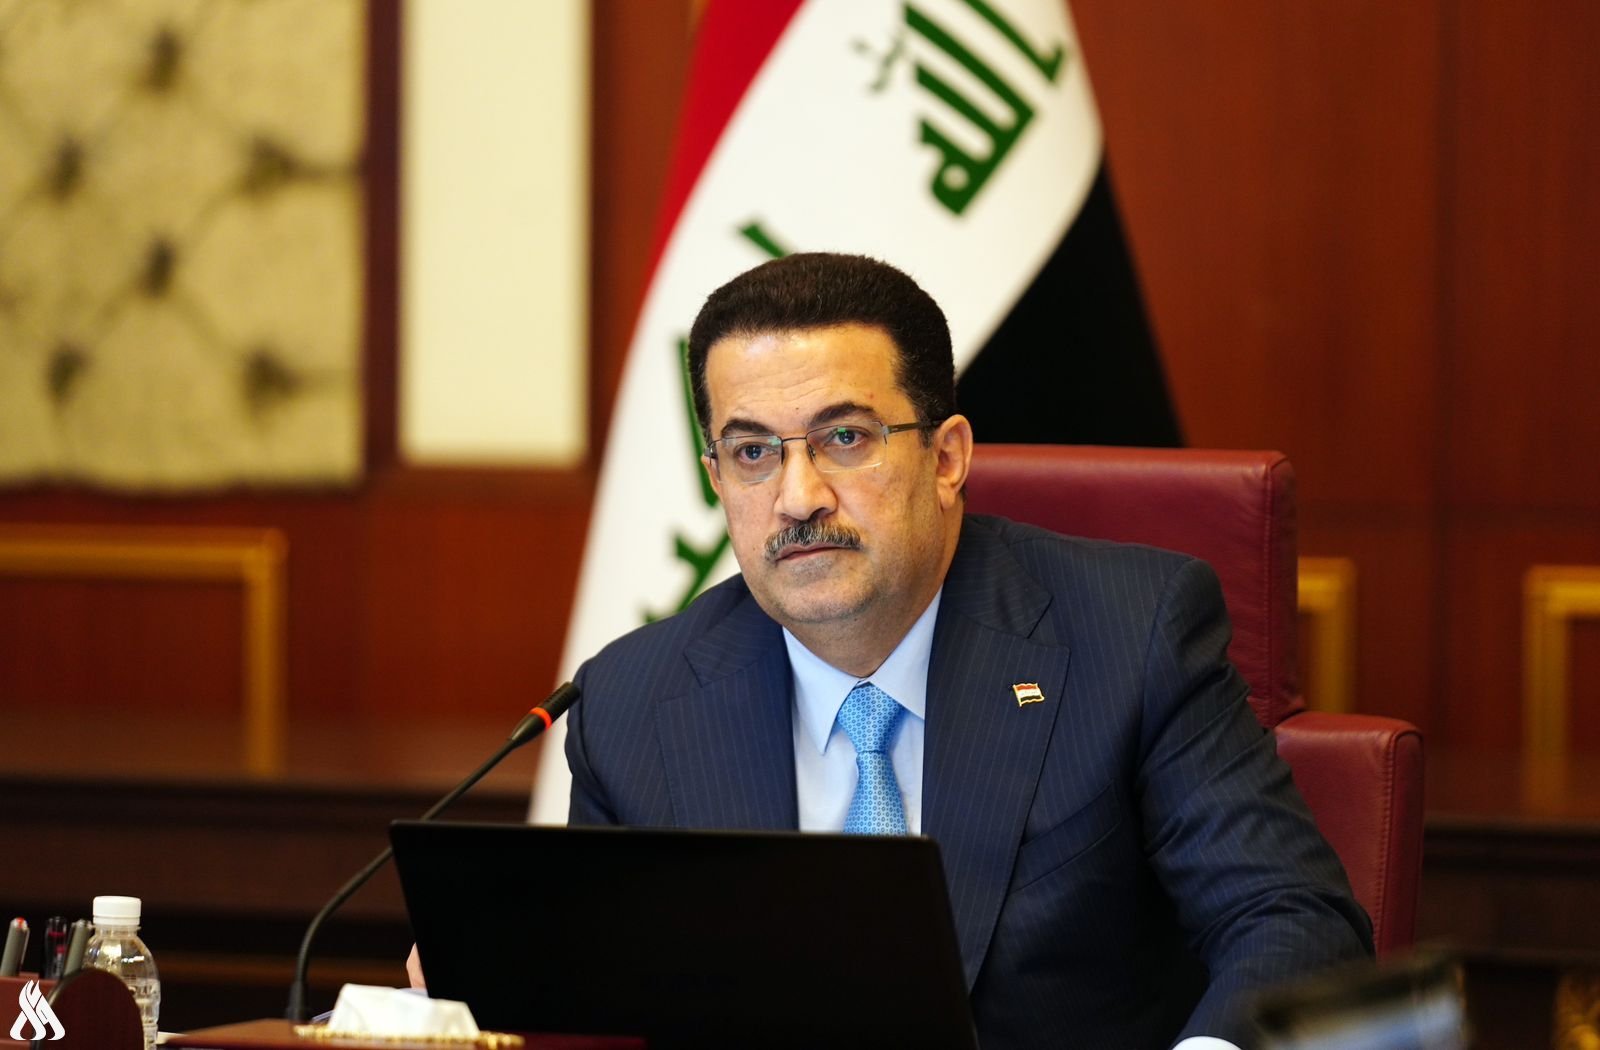  رئيس الوزراء العراقي، محمد شياع السوداني (واع)